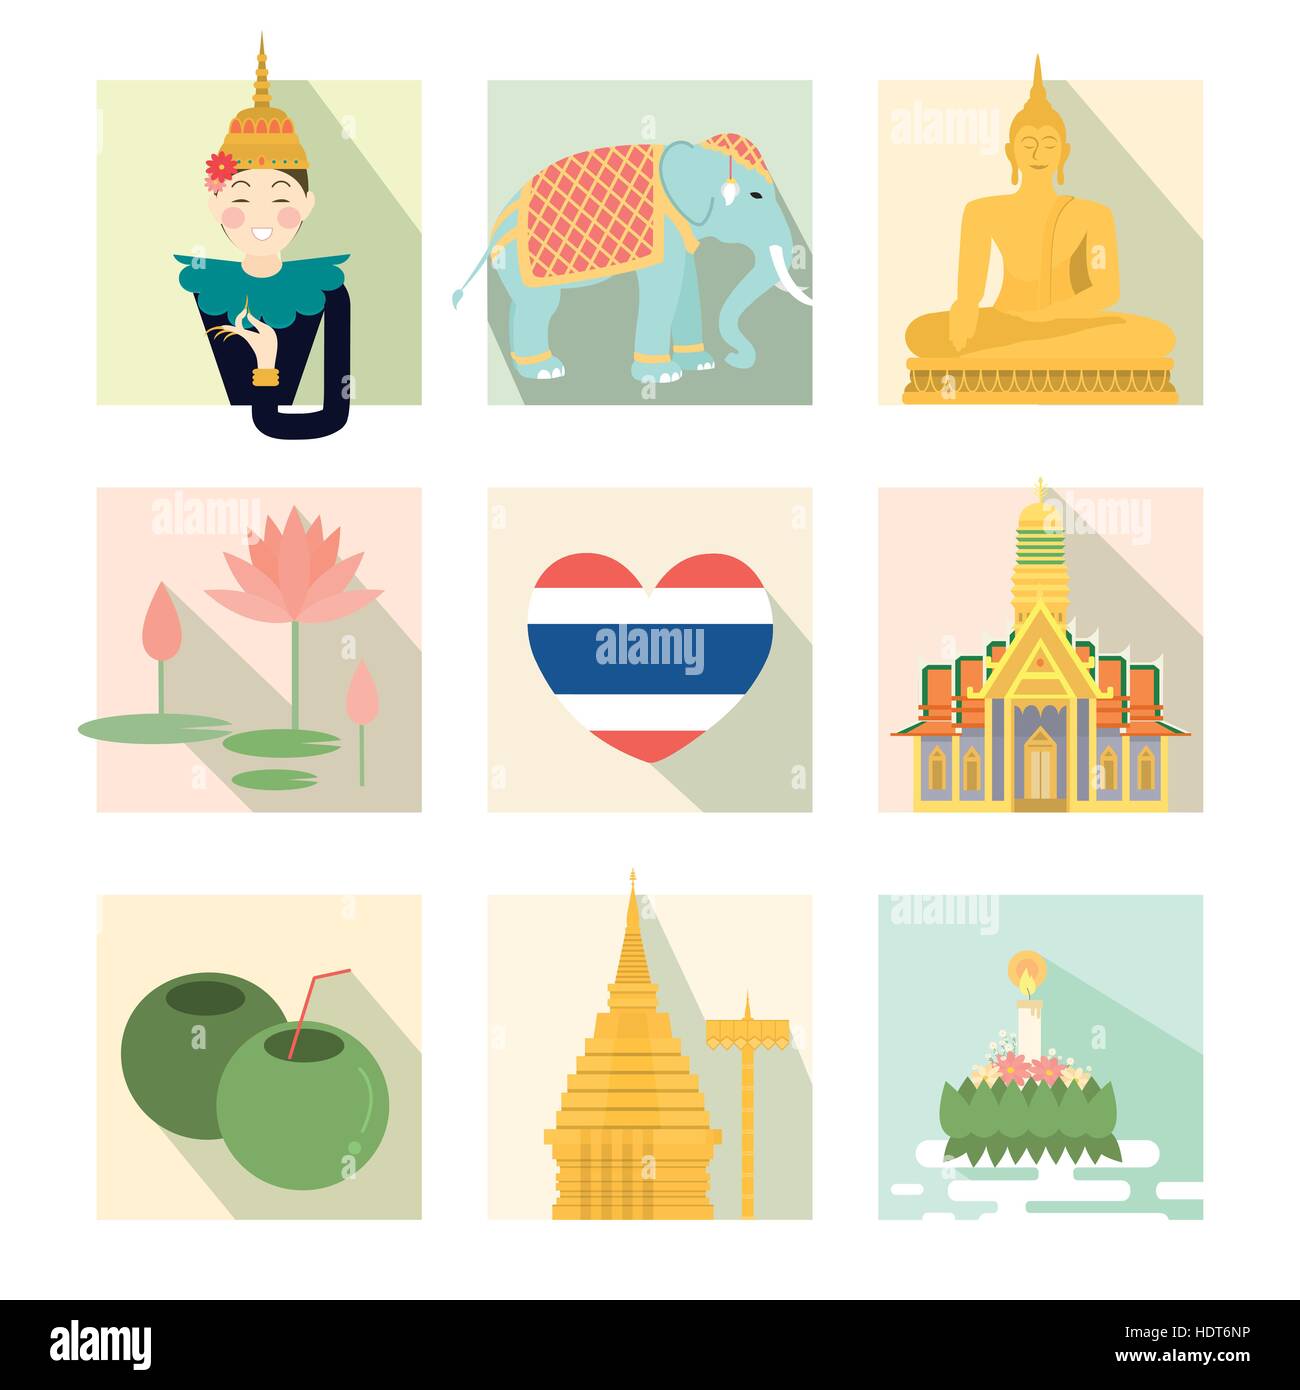 Adorabili Thailandia concetto di viaggio insieme di raccolta in uno stile piatto Illustrazione Vettoriale